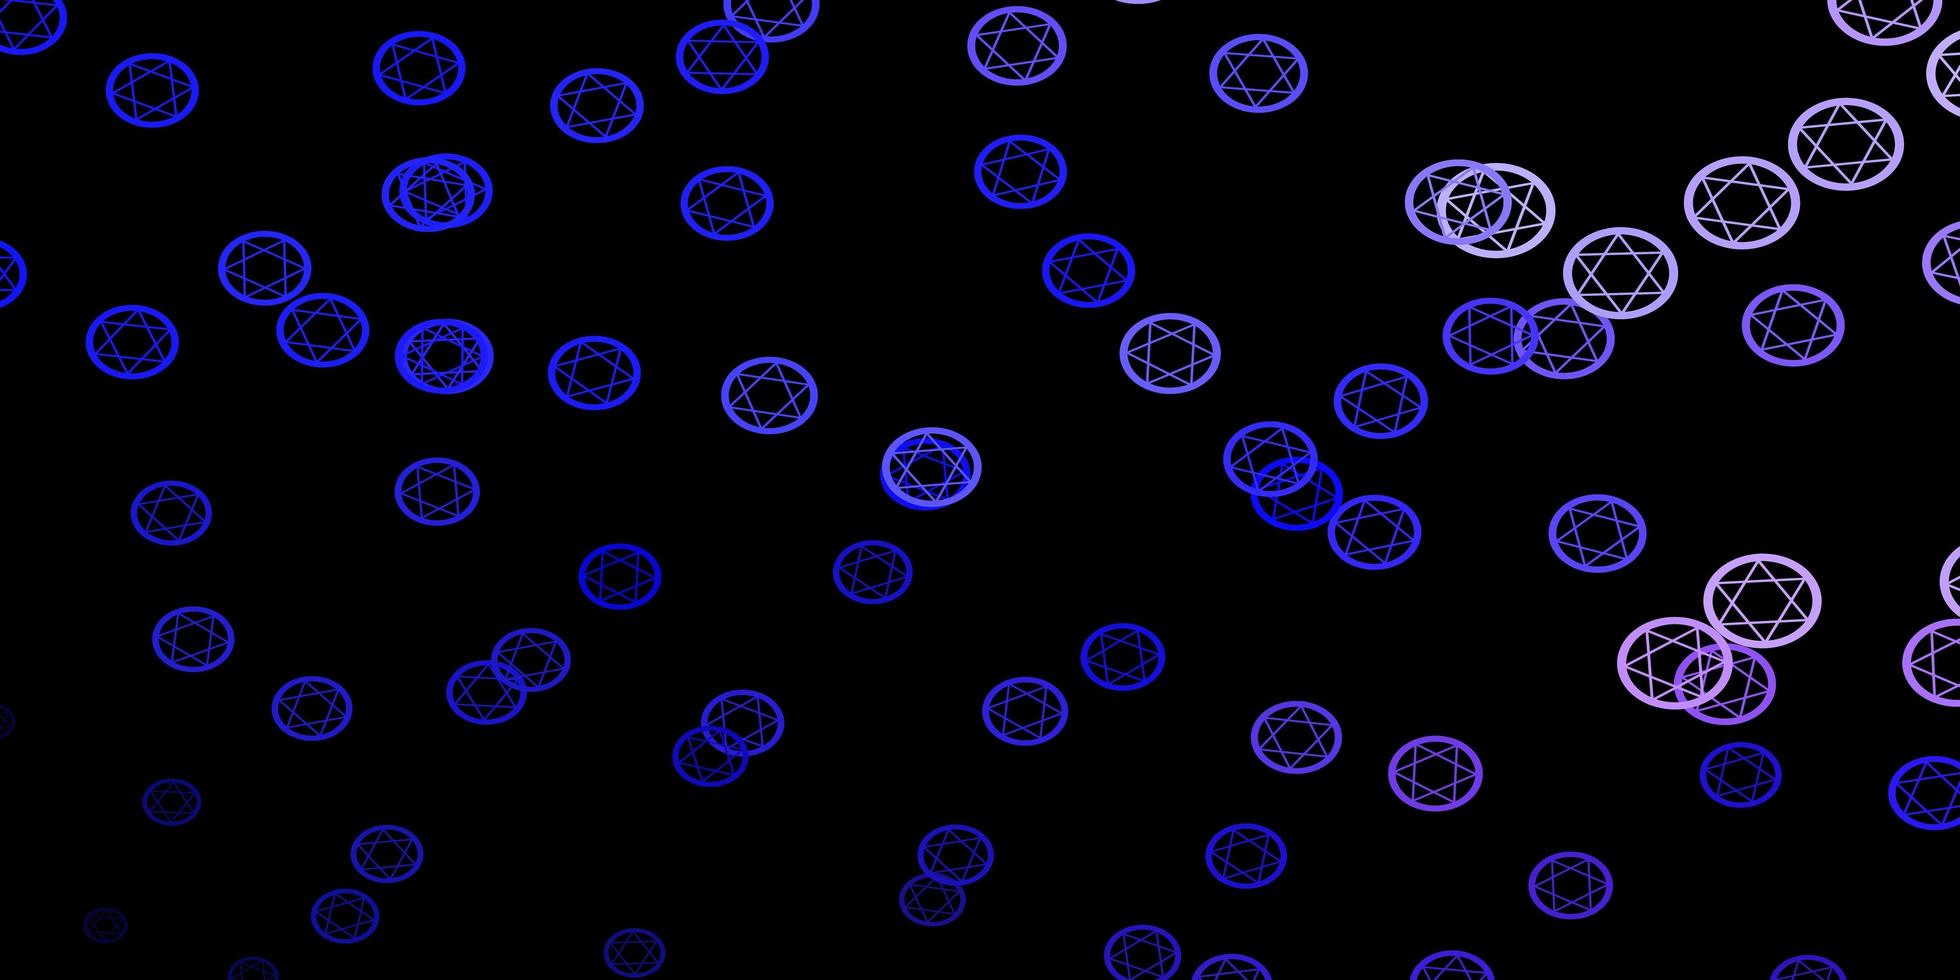 mörkrosa, blå vektorbakgrund med ockulta symboler. vektor